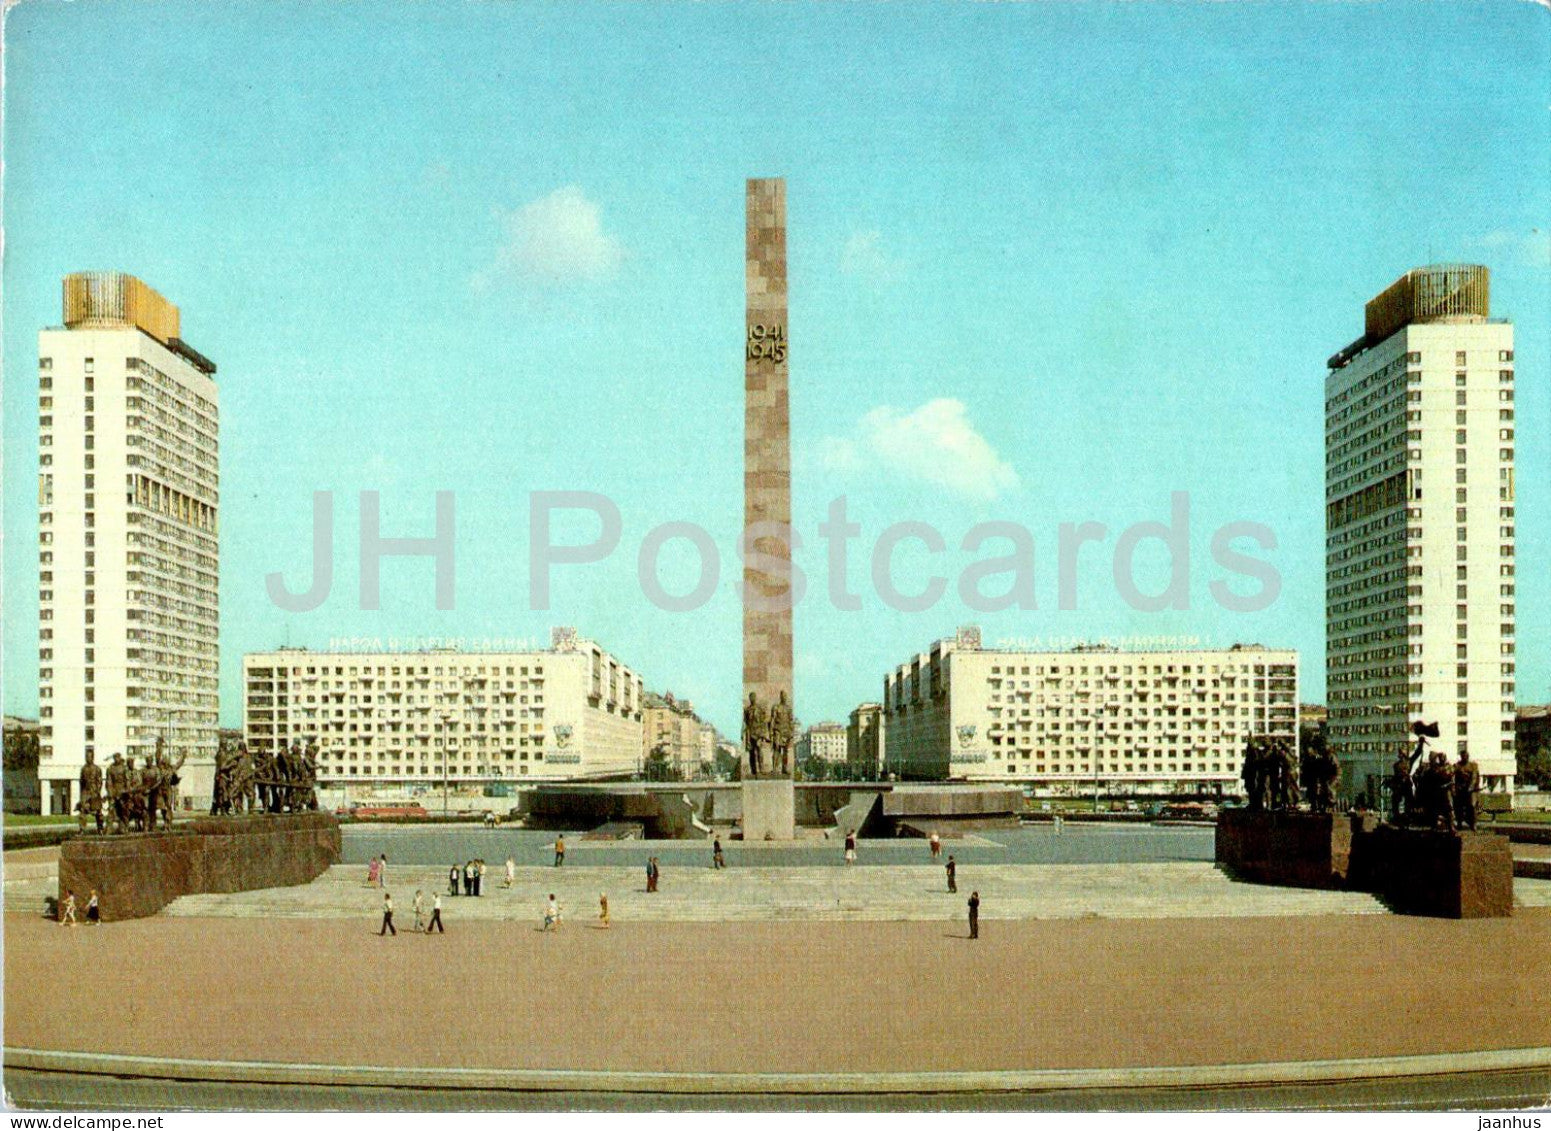 Leningrad - St Petersburg - Victory Square - Aeroflot - Russia USSR - unused - JH Postcards